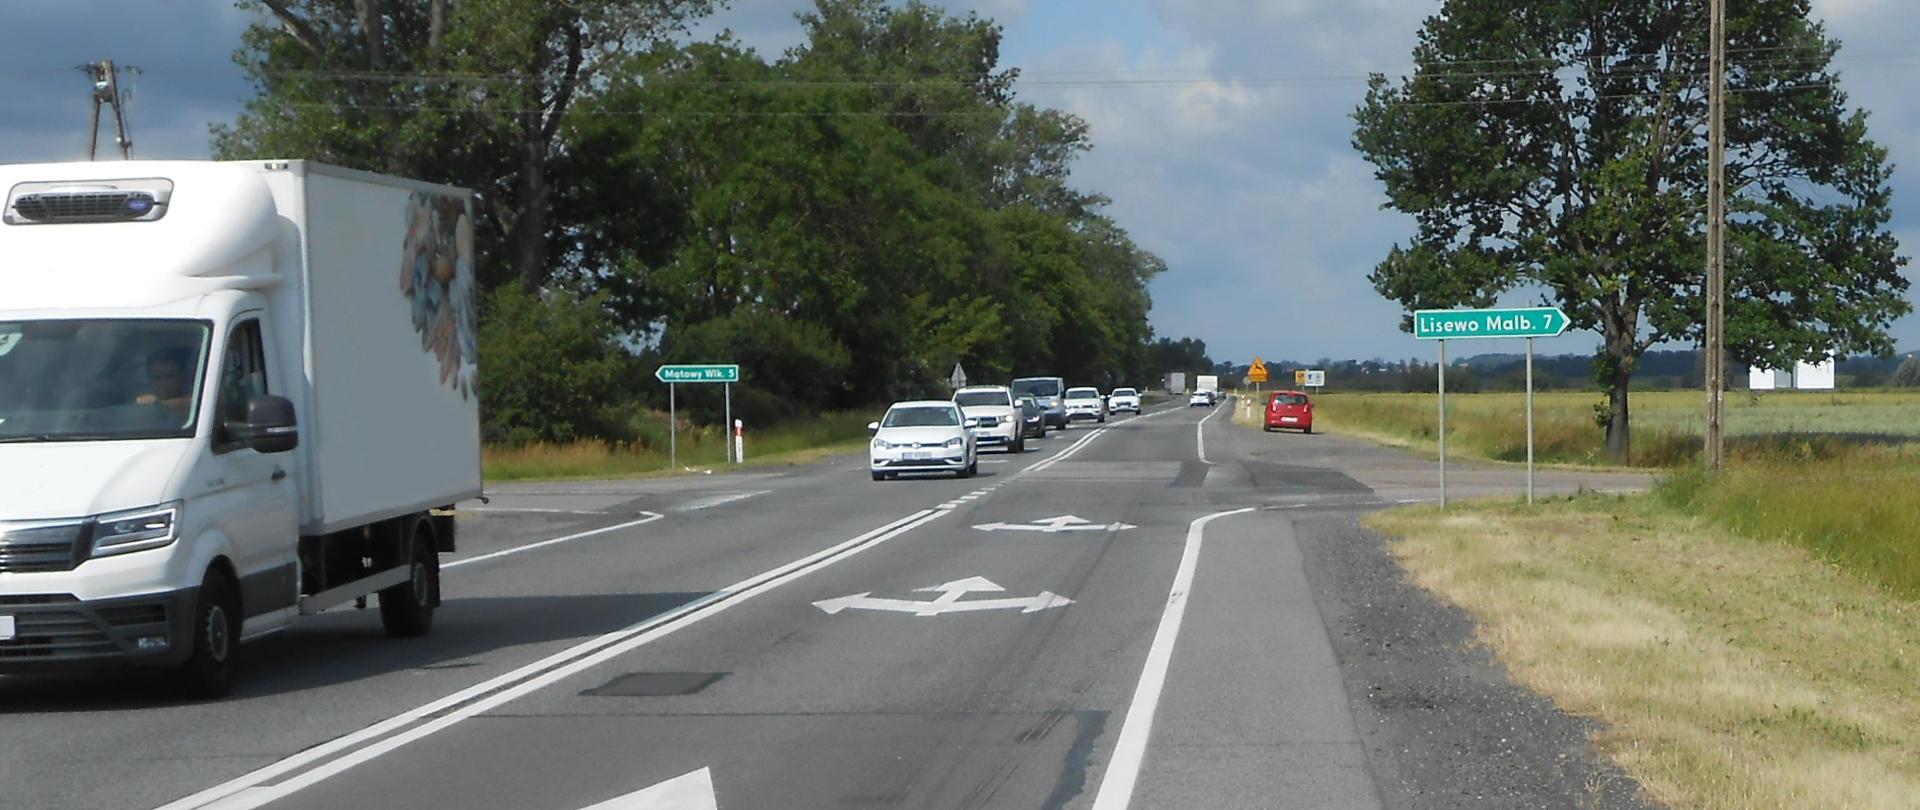 Zdjęcie przedstawia skrzyżowanie drogi krajowej nr 22 w Kończewicach. Na pierwszym planie droga z jadącymi samochodami.